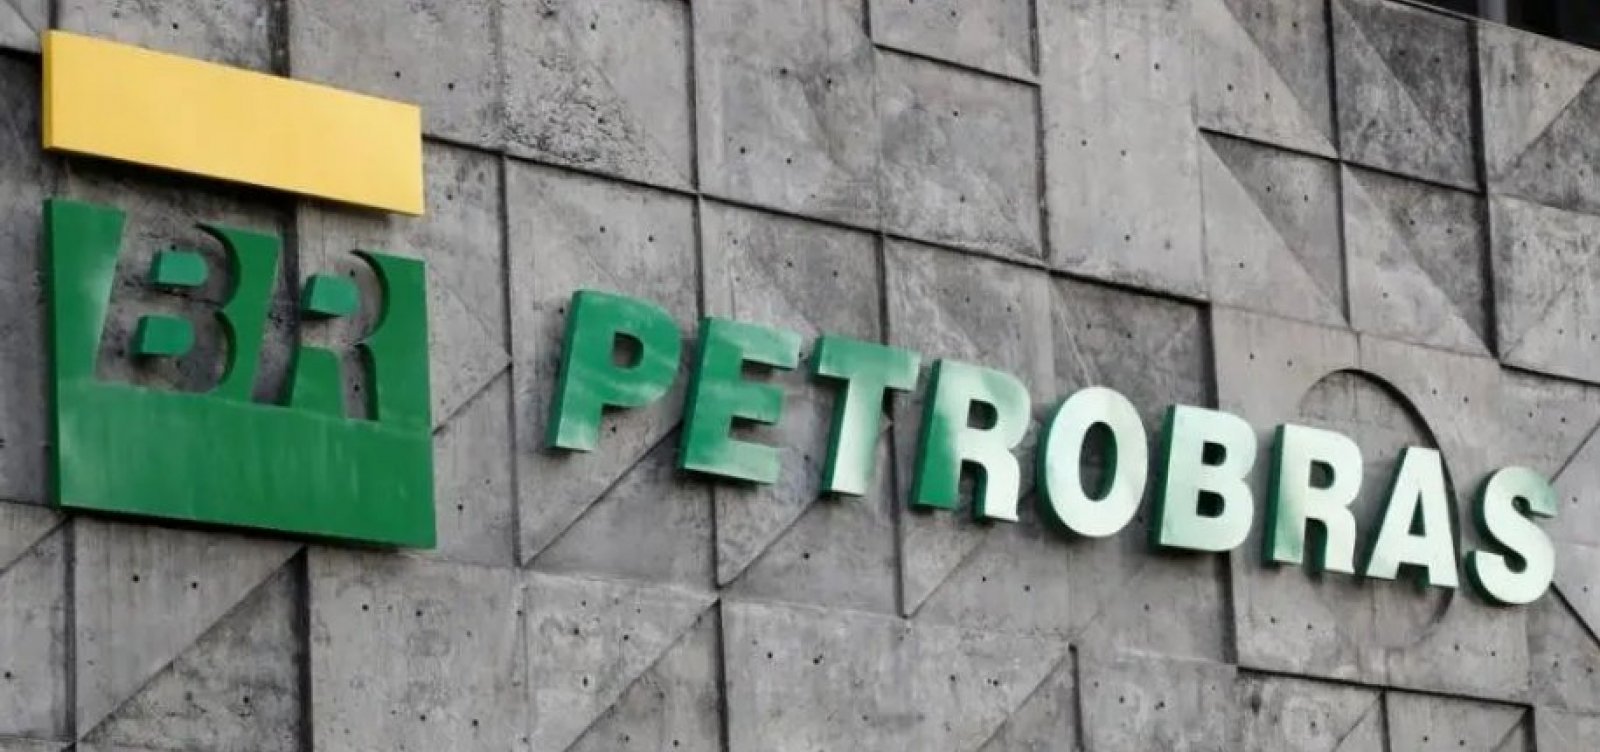 Comitê da Petrobras se reúne nesta sexta para analisar indicação a presidência